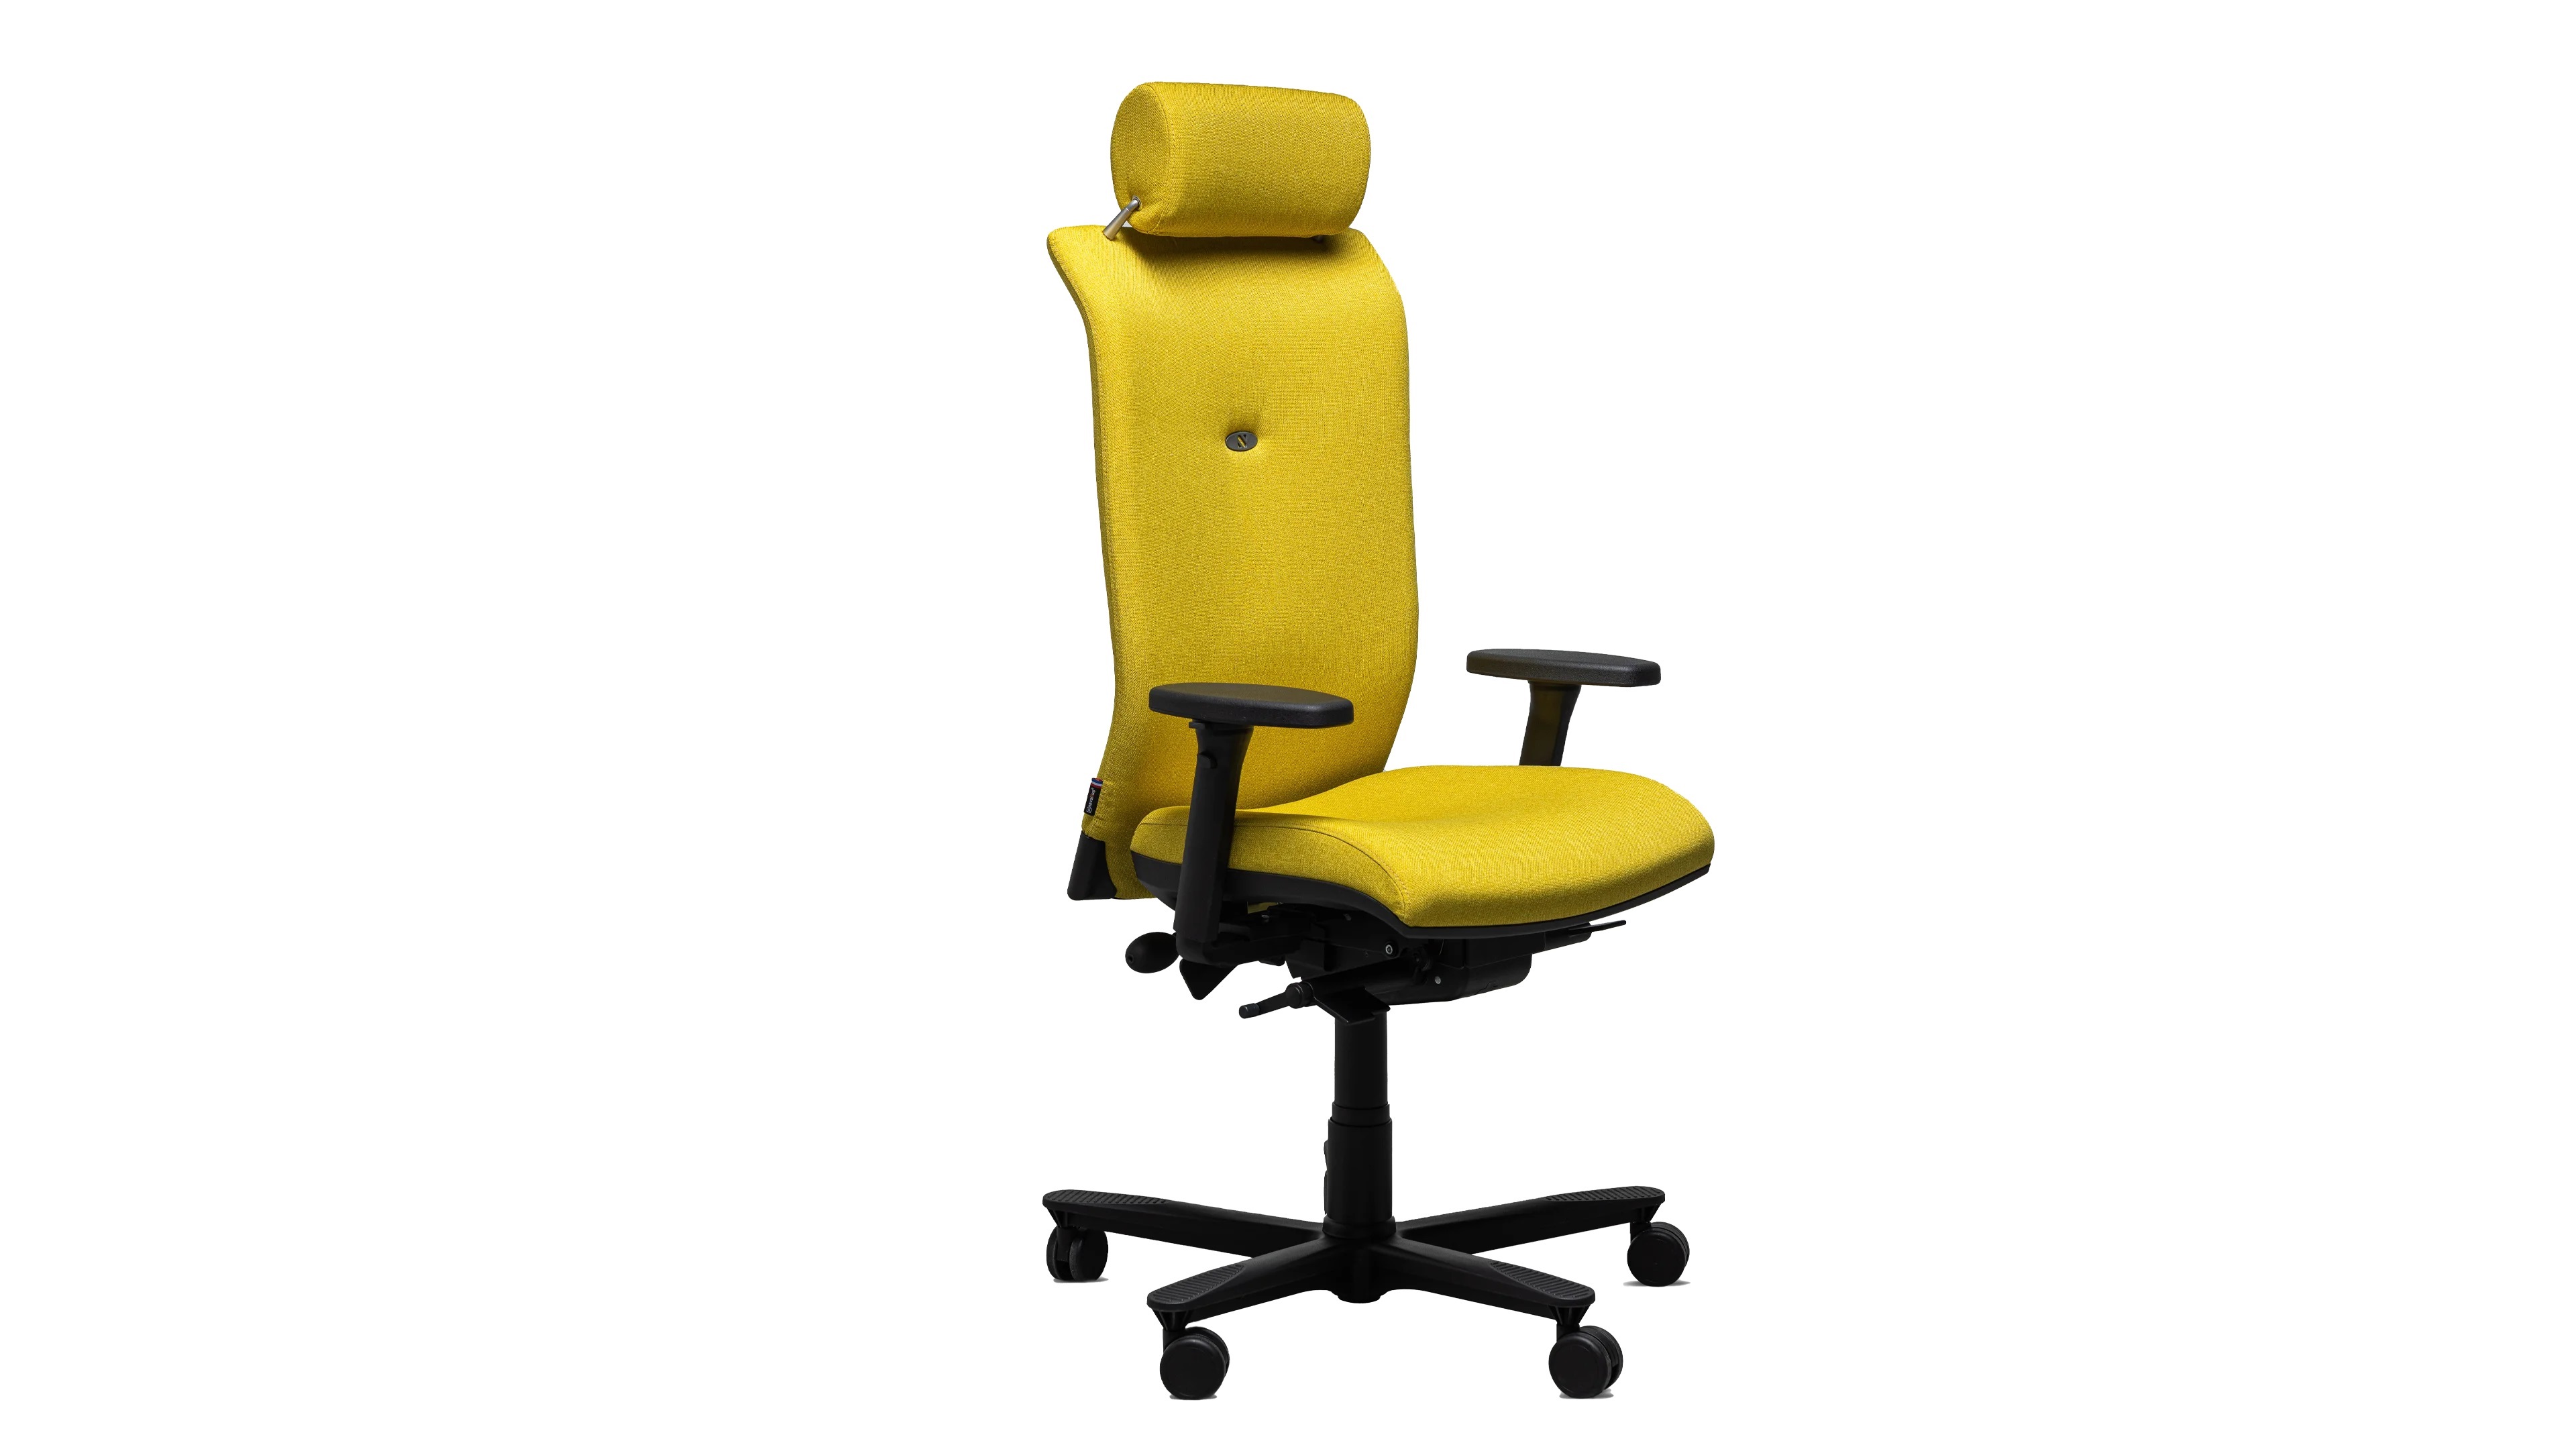 Chaise ergonomique ballon Tonic Chair® Confort 